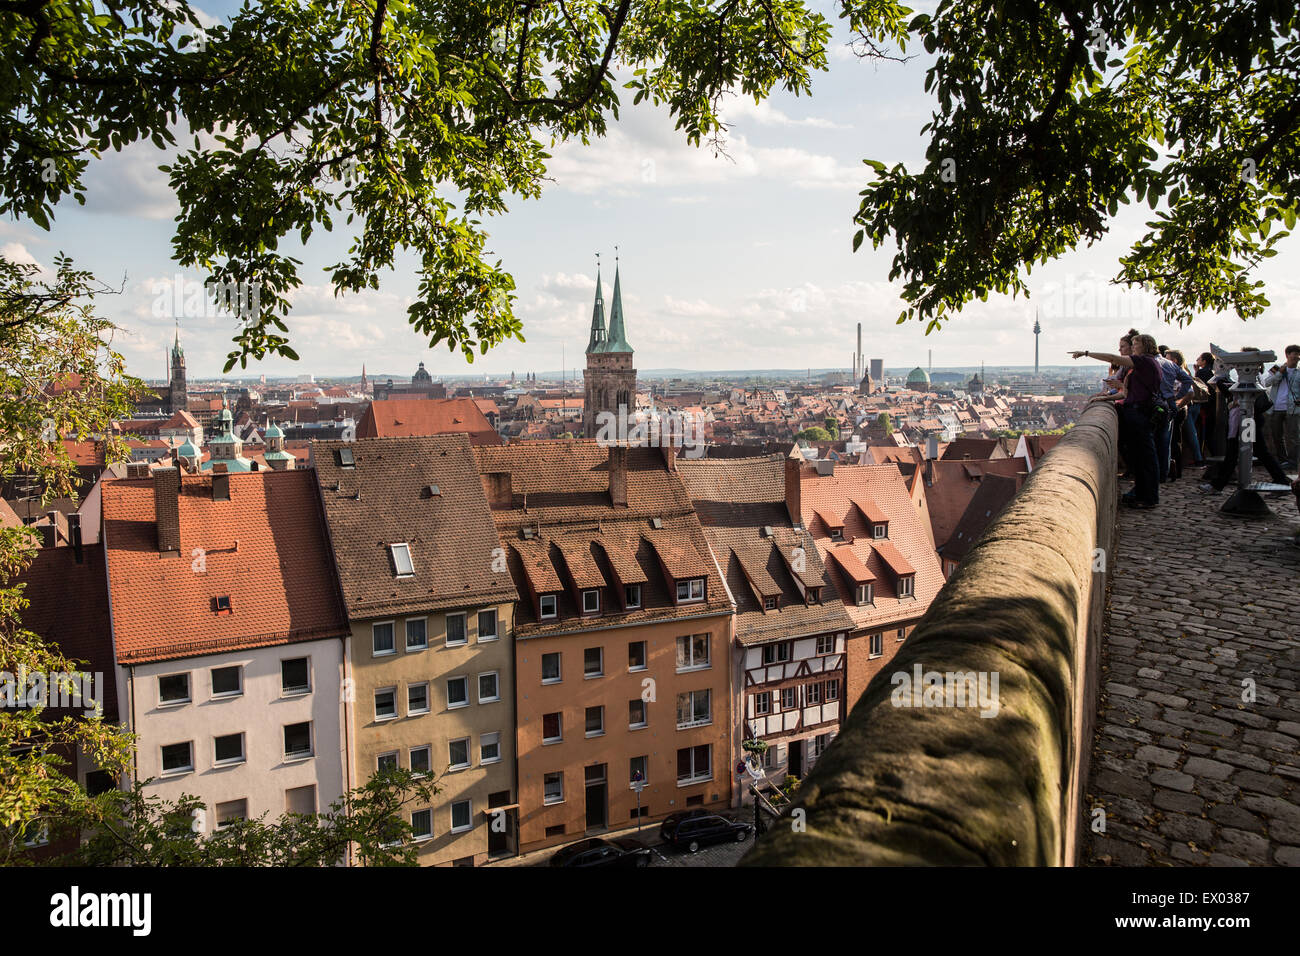 Groupe de touristes l'affichage de la vieille ville, Nuremberg, Allemagne Banque D'Images